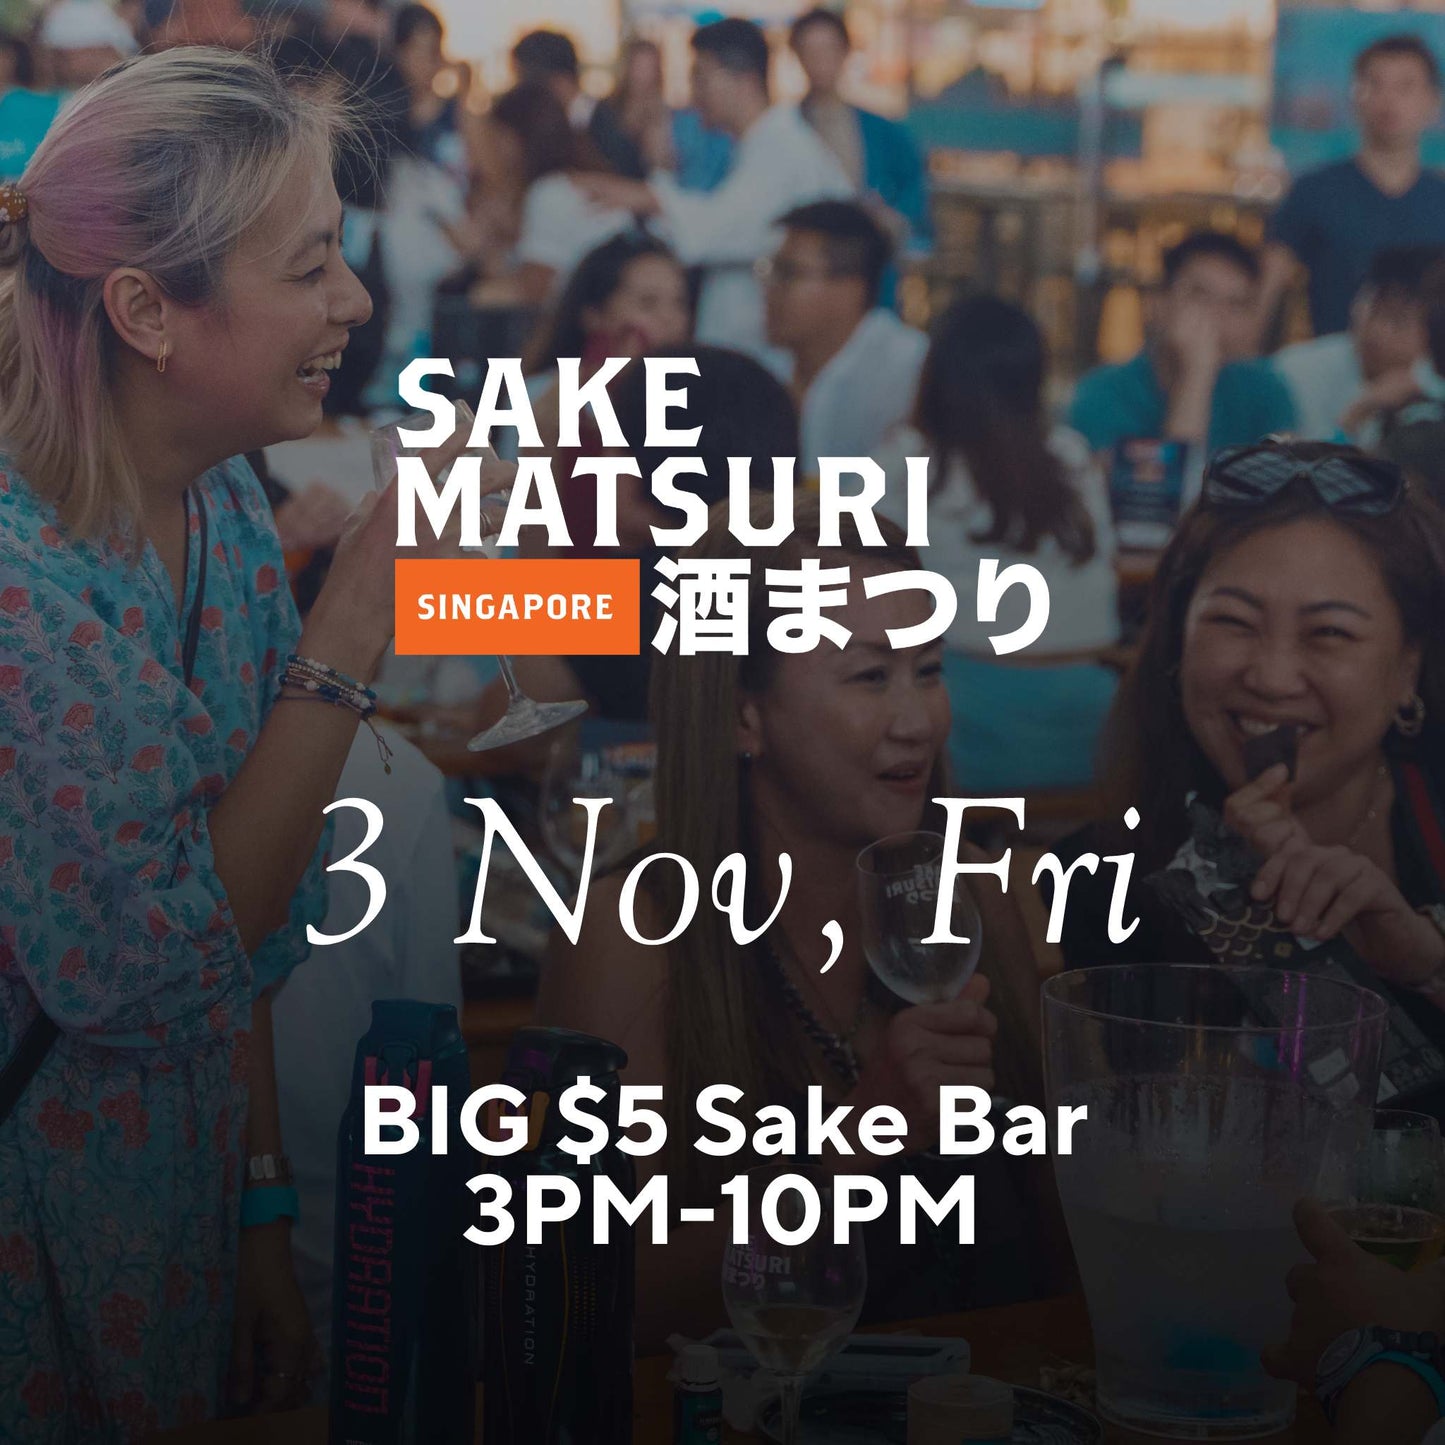 BIG $5 Sake Bar